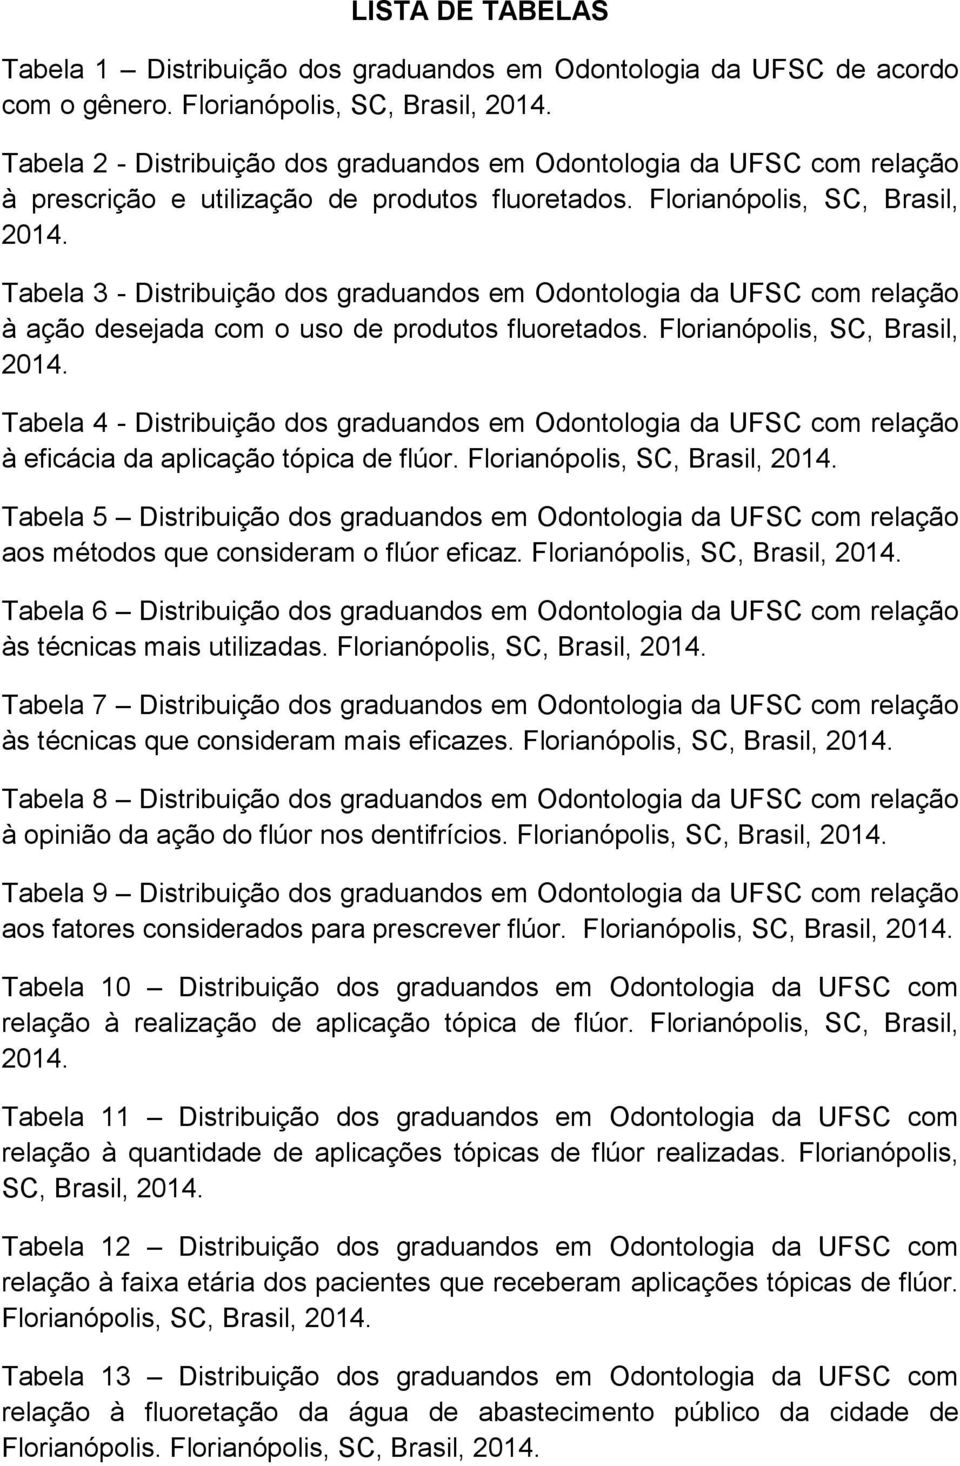 Tabela 3 - Distribuição dos graduandos em Odontologia da UFSC com relação à ação desejada com o uso de produtos fluoretados. Florianópolis, SC, Brasil, 2014.